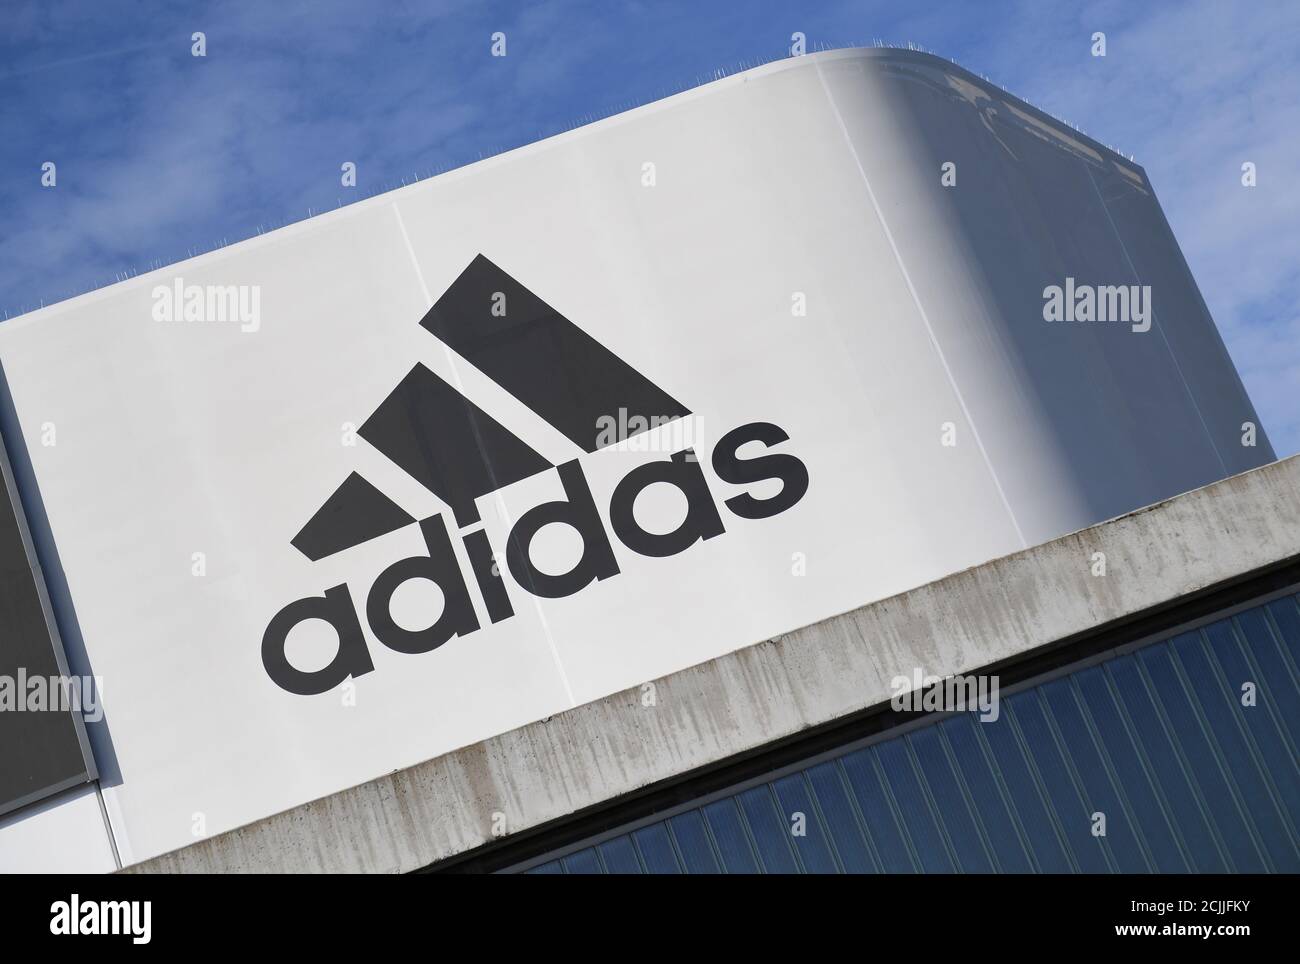 El logotipo de Adidas se muestra durante las celebraciones del 70  aniversario del fabricante alemán de ropa deportiva Adidas en la sede de la  empresa en Herzogenaurach, Alemania, el 9 de agosto